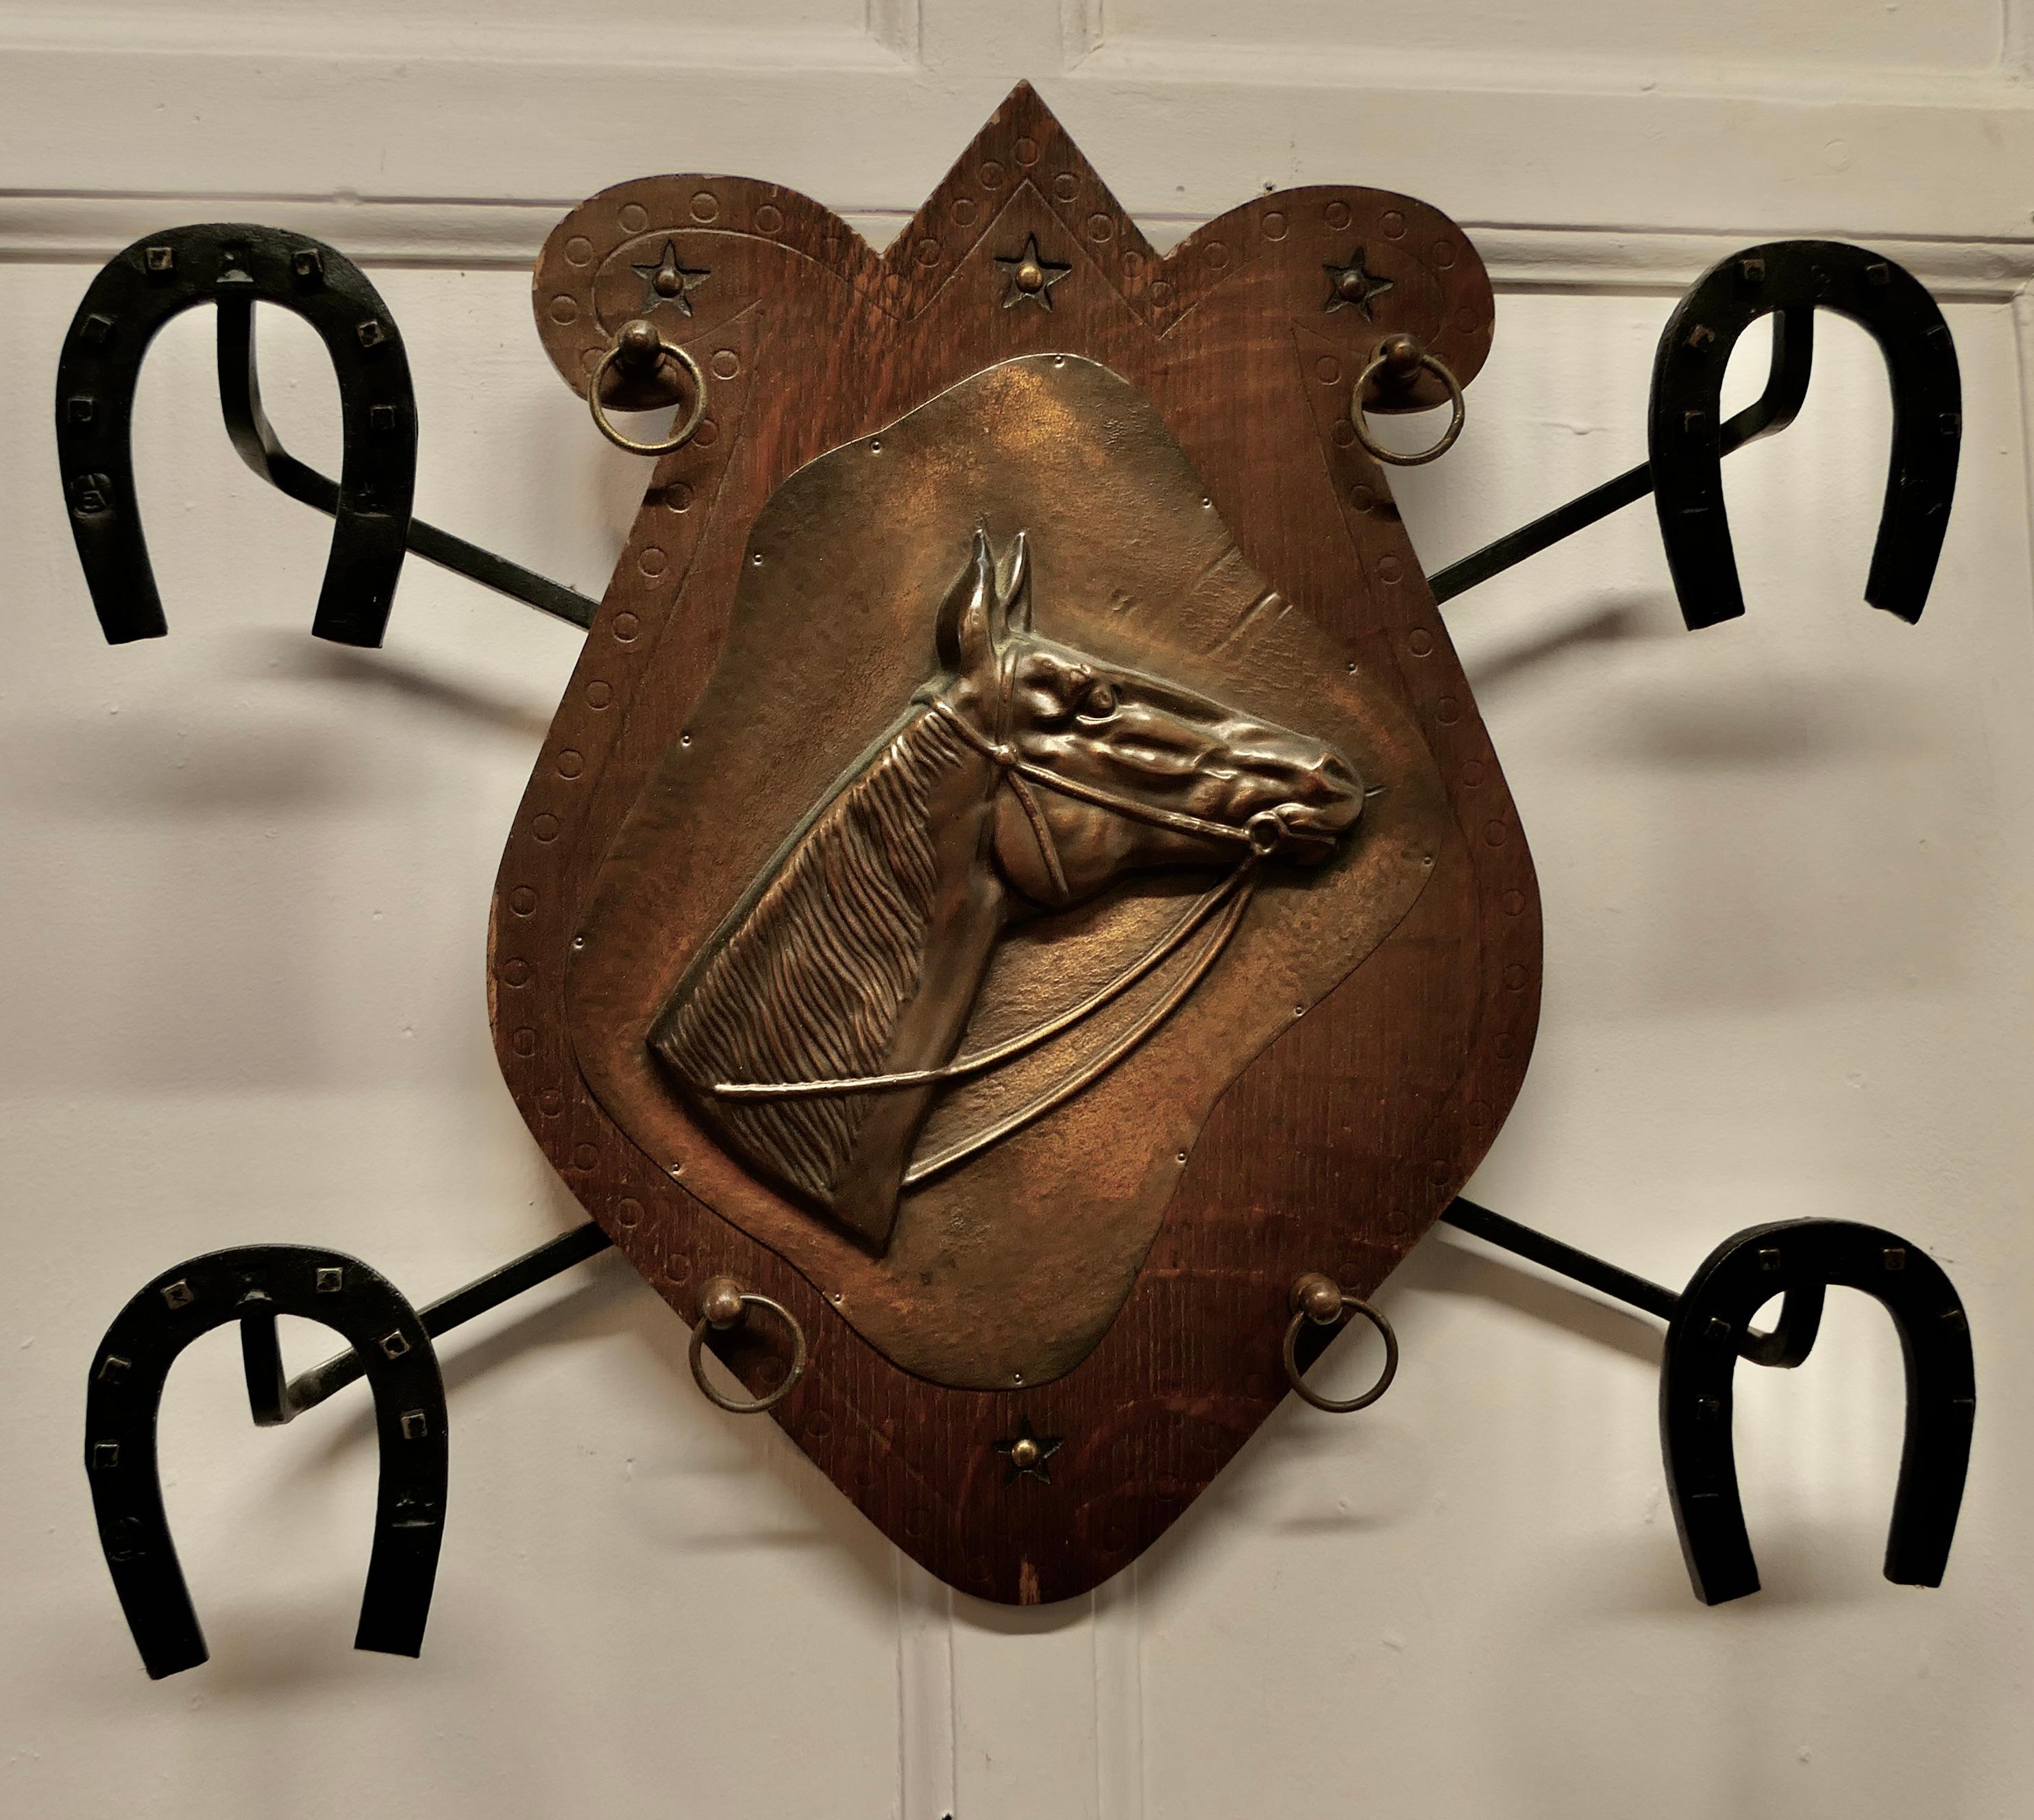 Französische Wandgarderobe für Mäntel und Tack zum Thema Reiten 

Dies ist ein attraktives Wandregal mit 4 Aufhängern, diese sind aus Eisen und in Form von Horse Shoes und in der Mitte gibt es eine geschlagene Kupferplakette eines Pferdekopfes
Ein